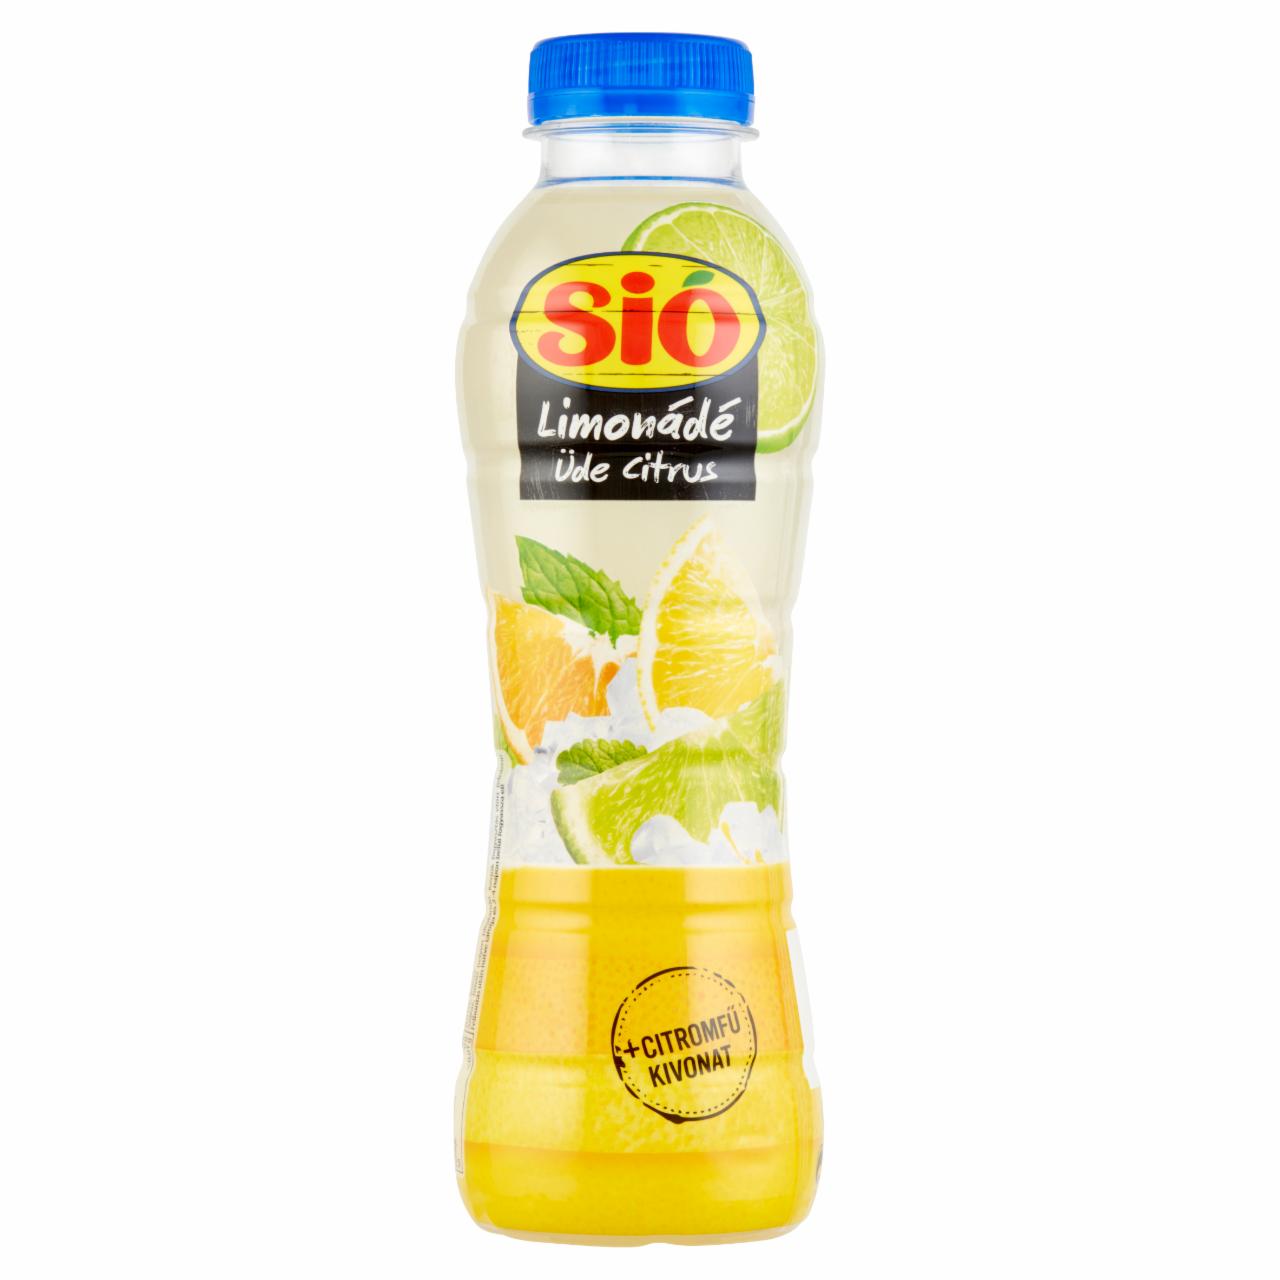 Képek - Sió limonádé citrus üdítőital citromfű kivonattal 0,5 l